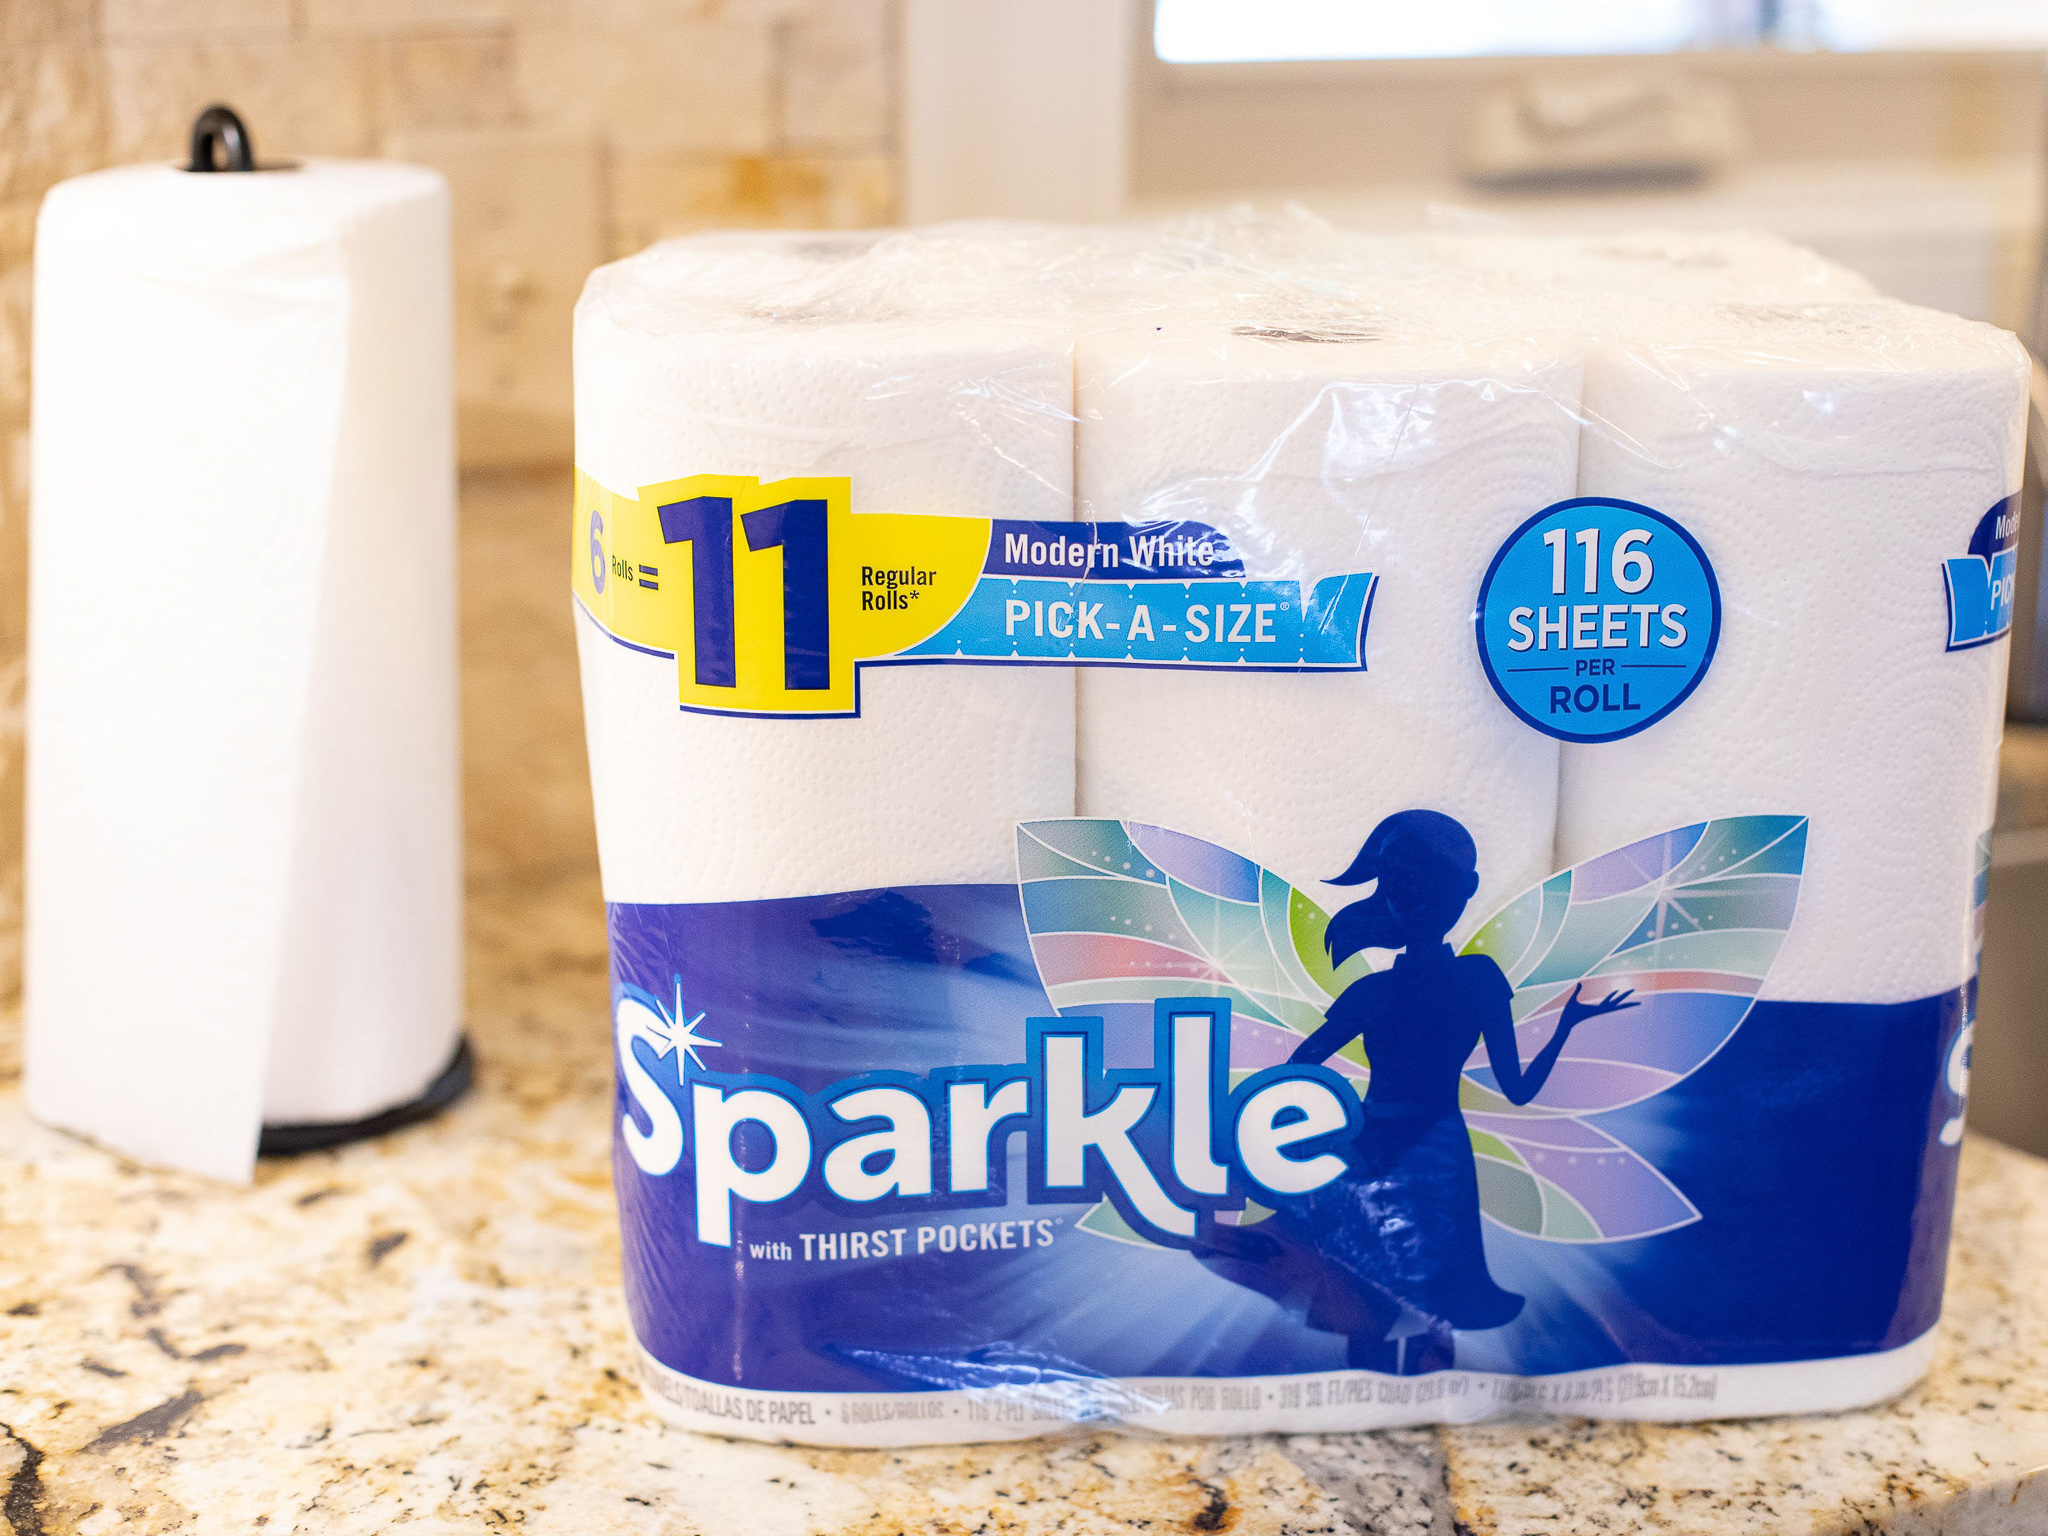 Sparkle Paper Towels As Low As $6.49 At Publix